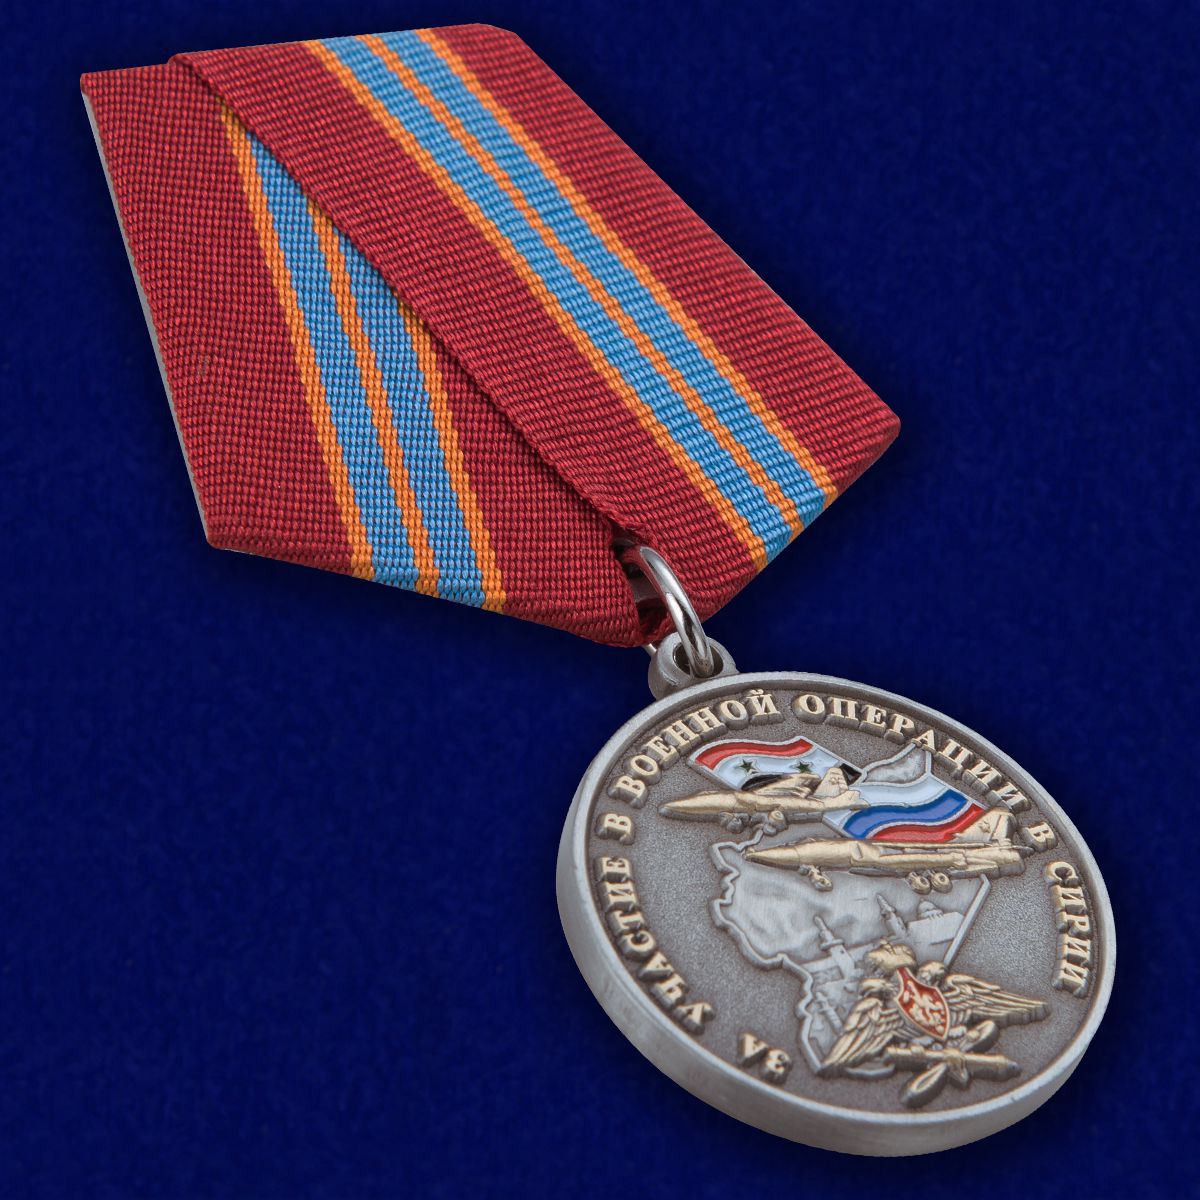 Памятная медаль "За участие в военной операции в Сирии" 